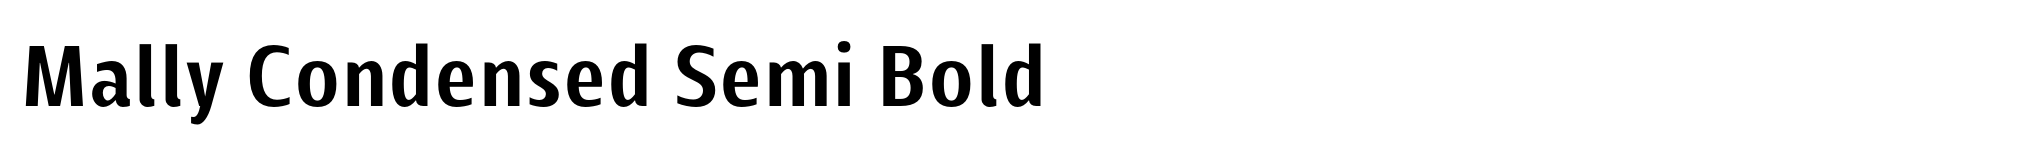 Mally Condensed Semi Bold image